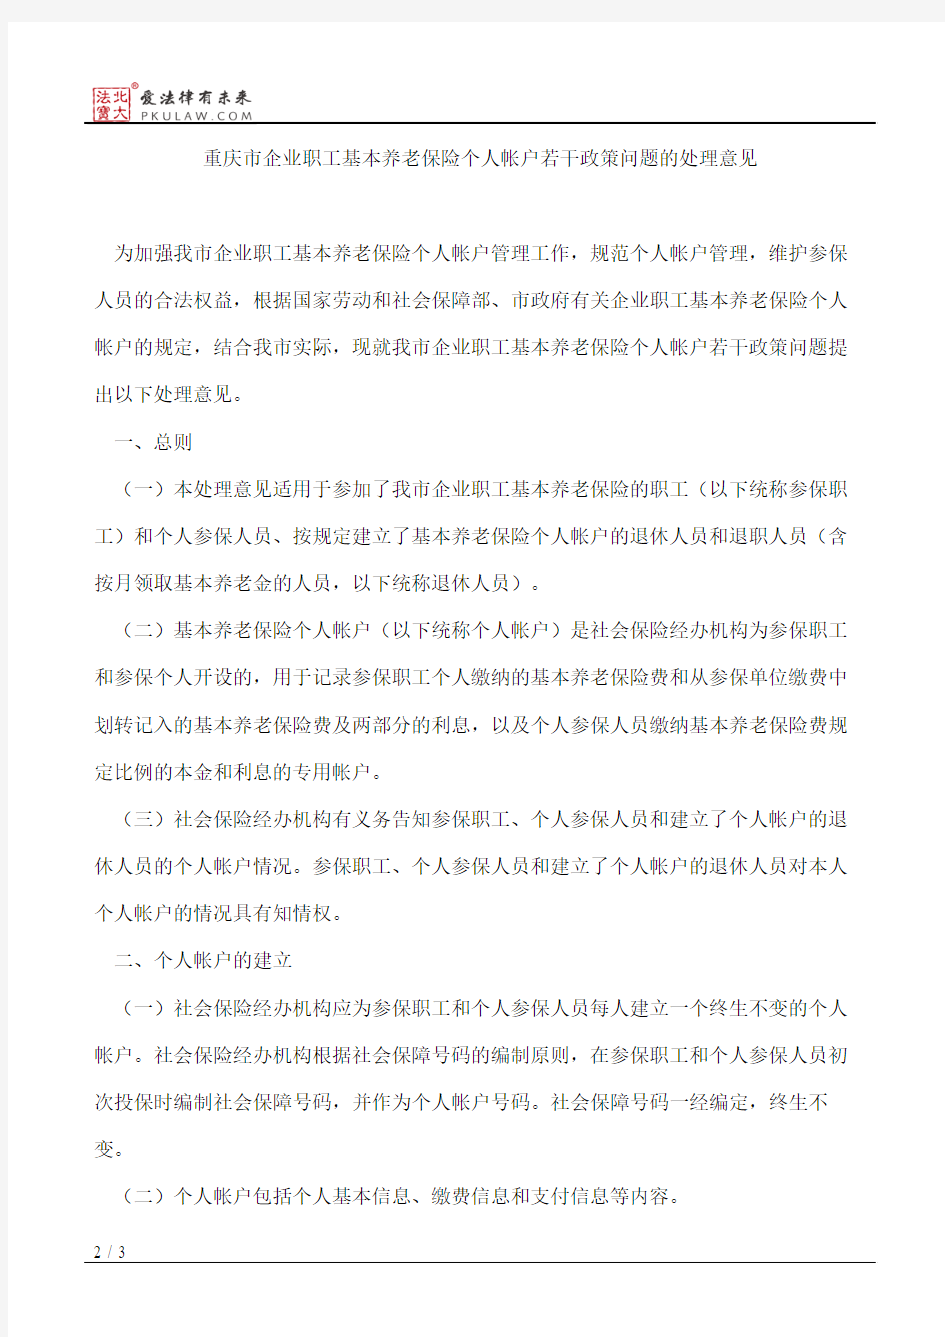 重庆市劳动和社会保障局关于印发重庆市企业职工基本养老保险个人